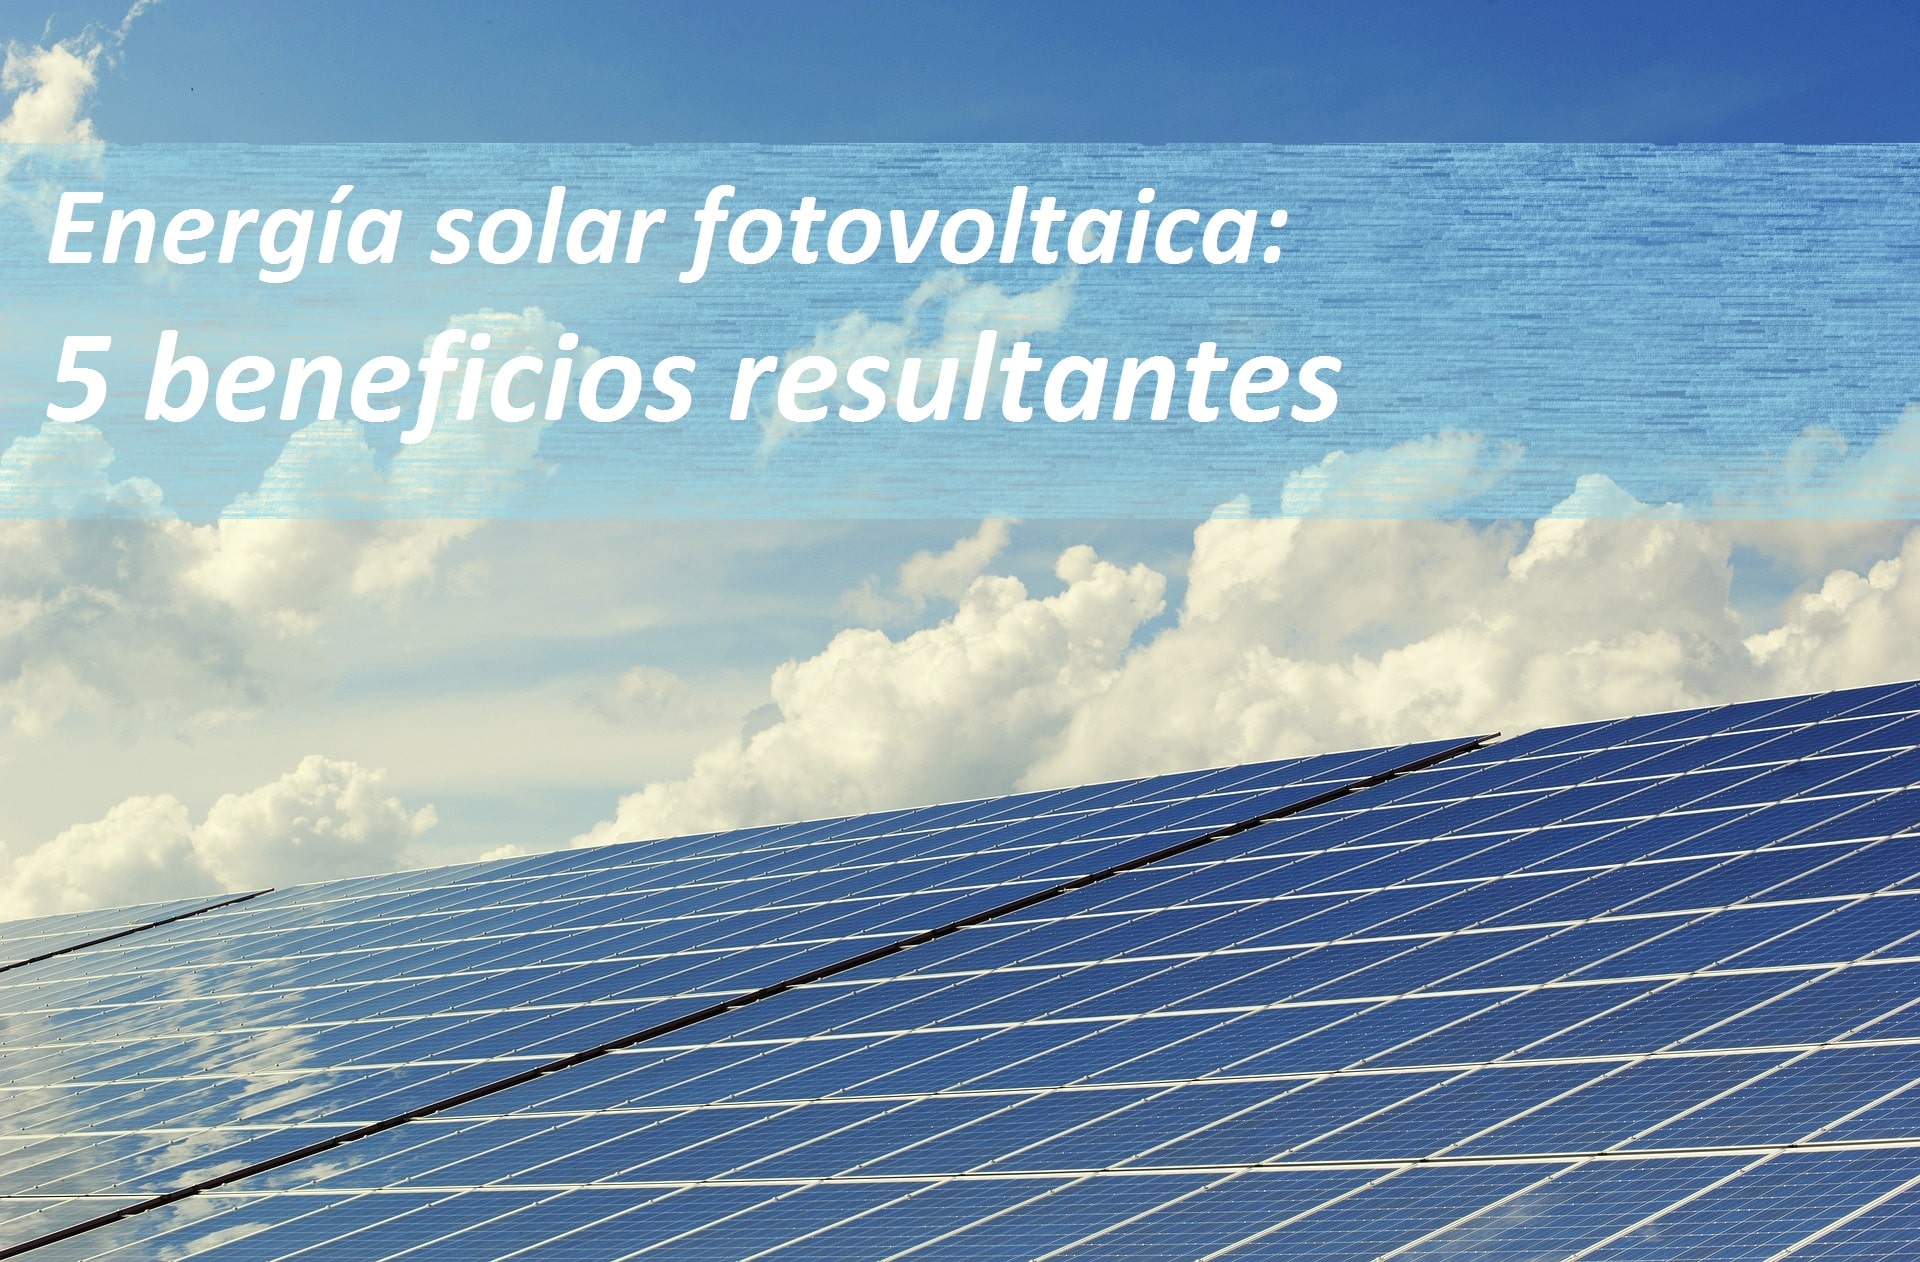 Beneficios energía solar fotovoltaica